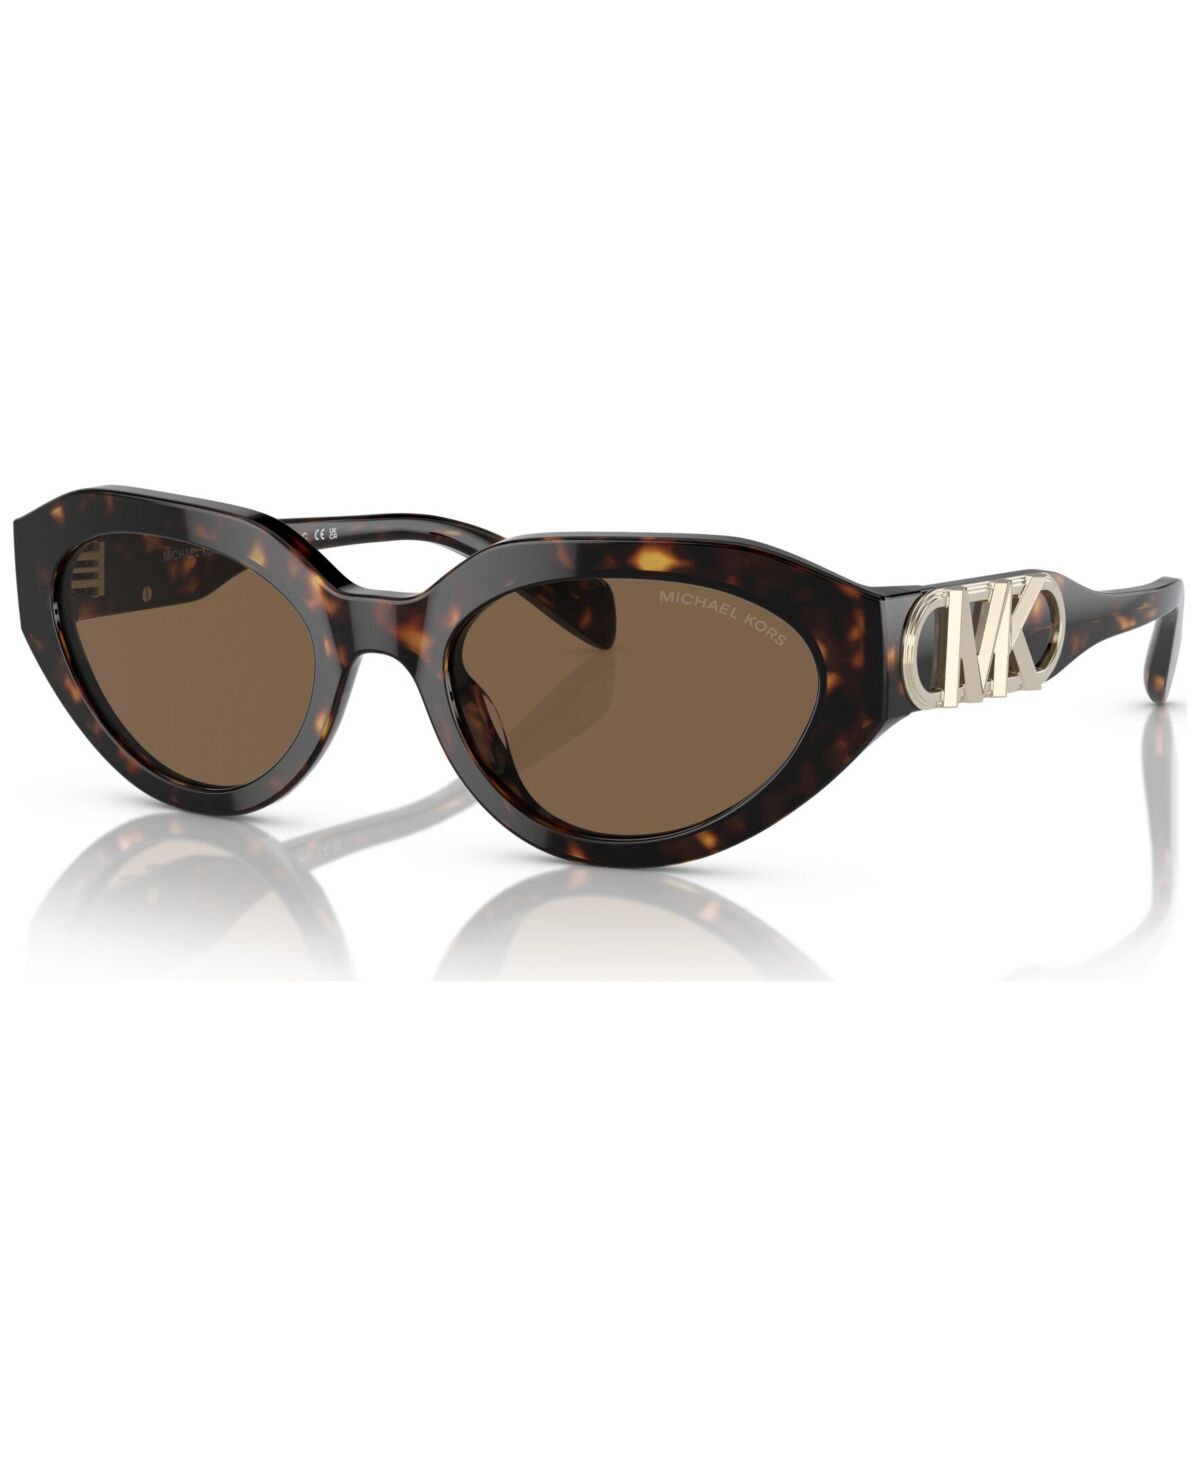 Michael Kors Women's Empire Oval Sunglasses, MK2192 - Dark Tortoise